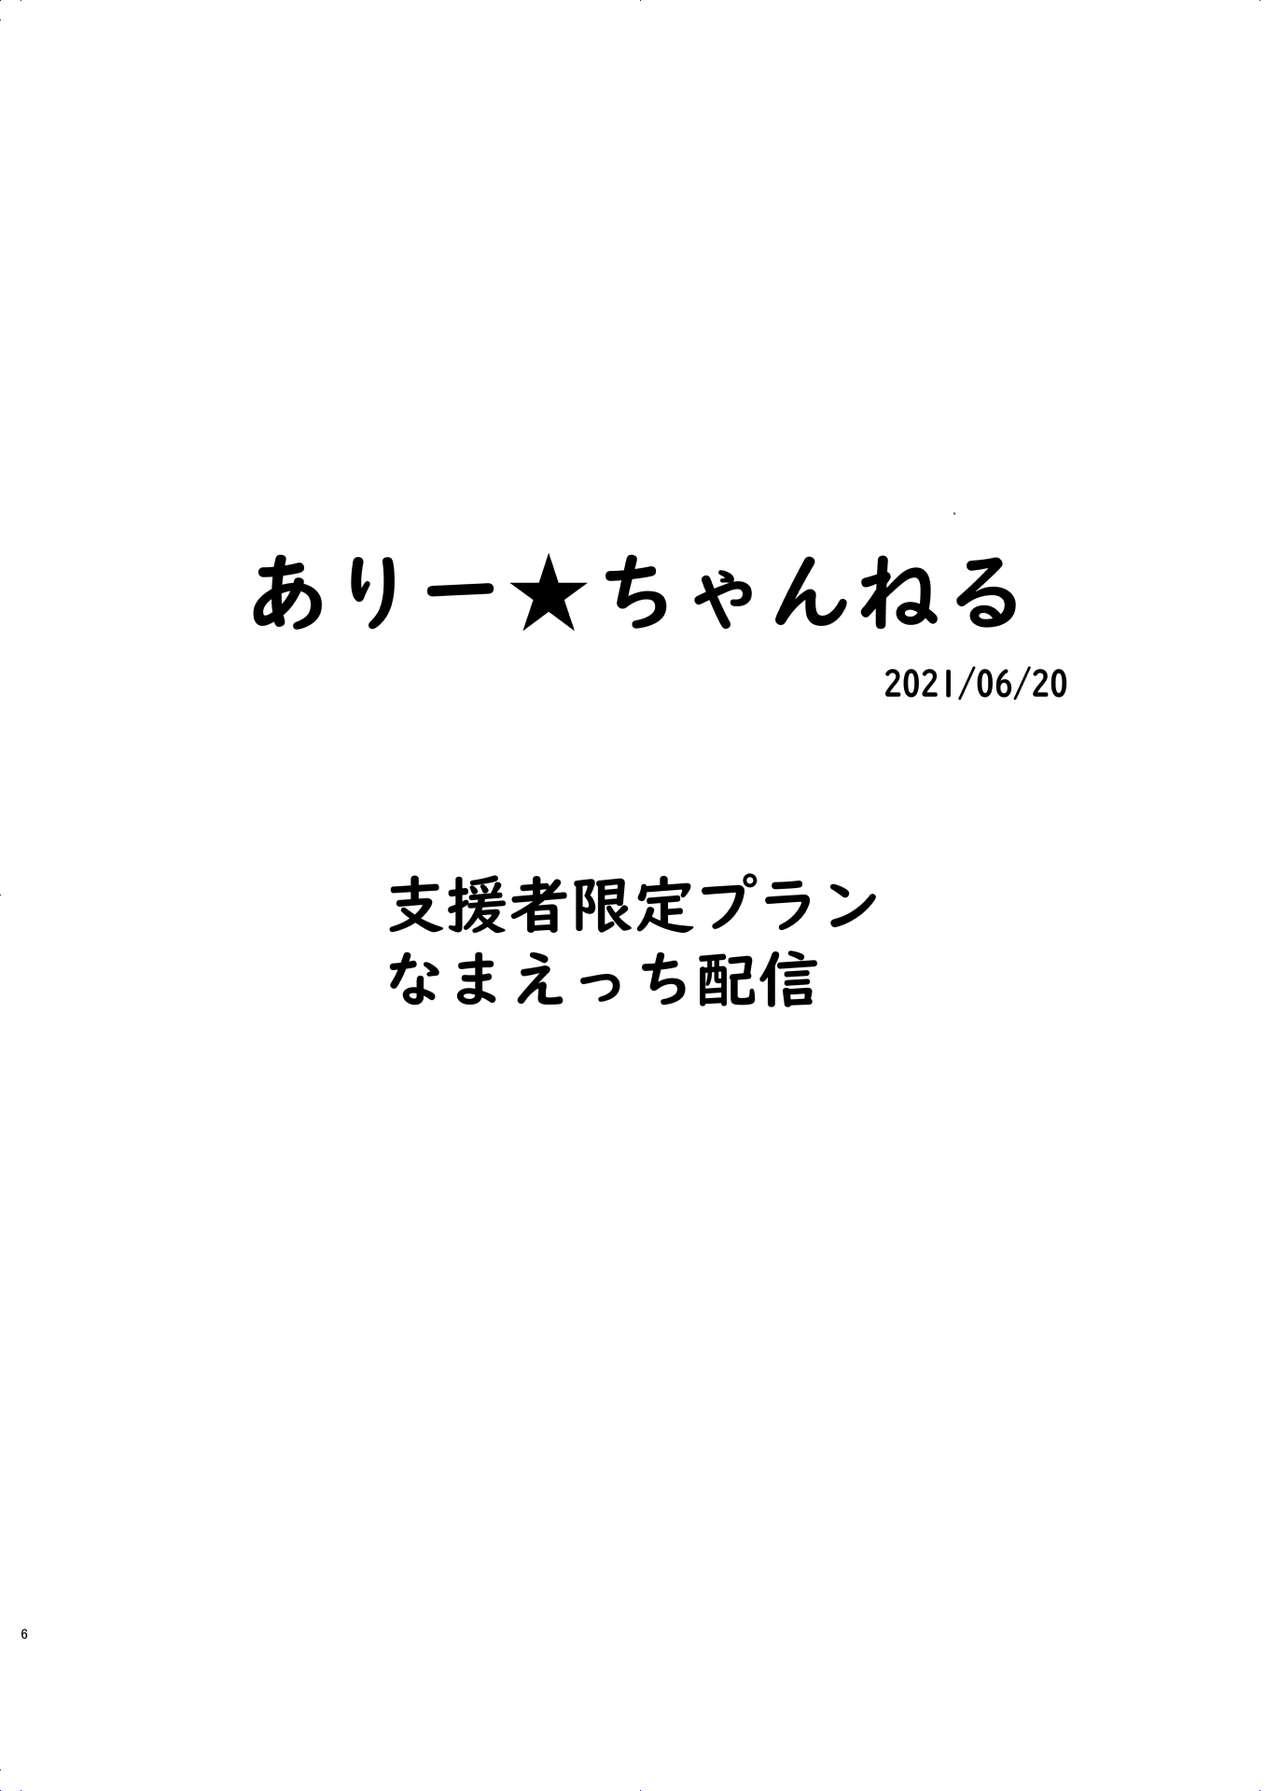 Amature Ari Channel 20210620 Shiensha Gentei Plan Nama Ecchi Haishin - Original Ejaculation - Page 6